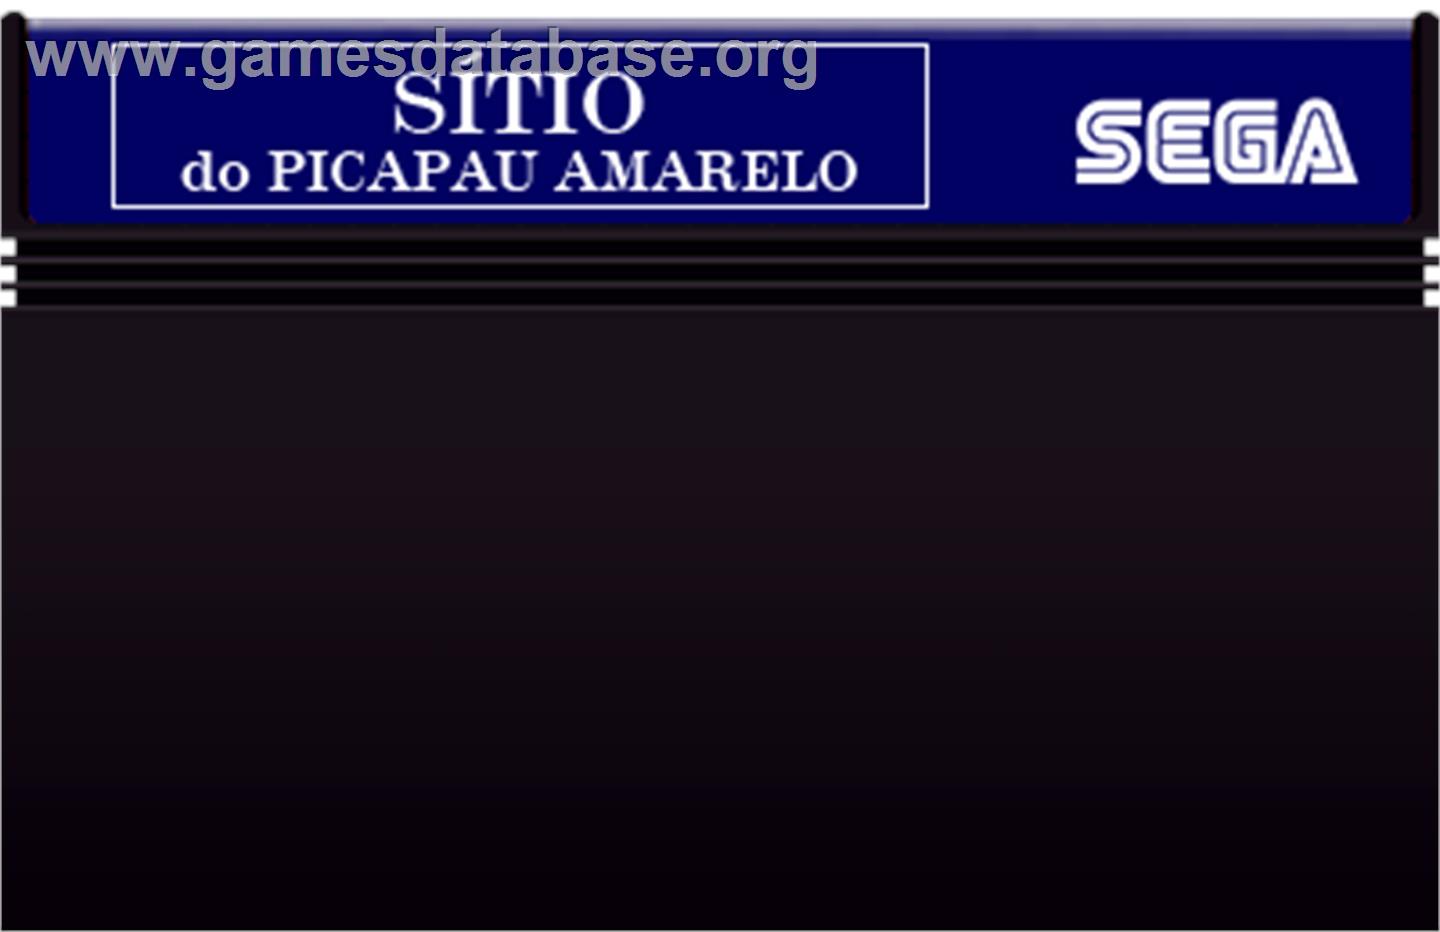 Sítio do Picapau Amarelo - Sega Master System - Artwork - Cartridge